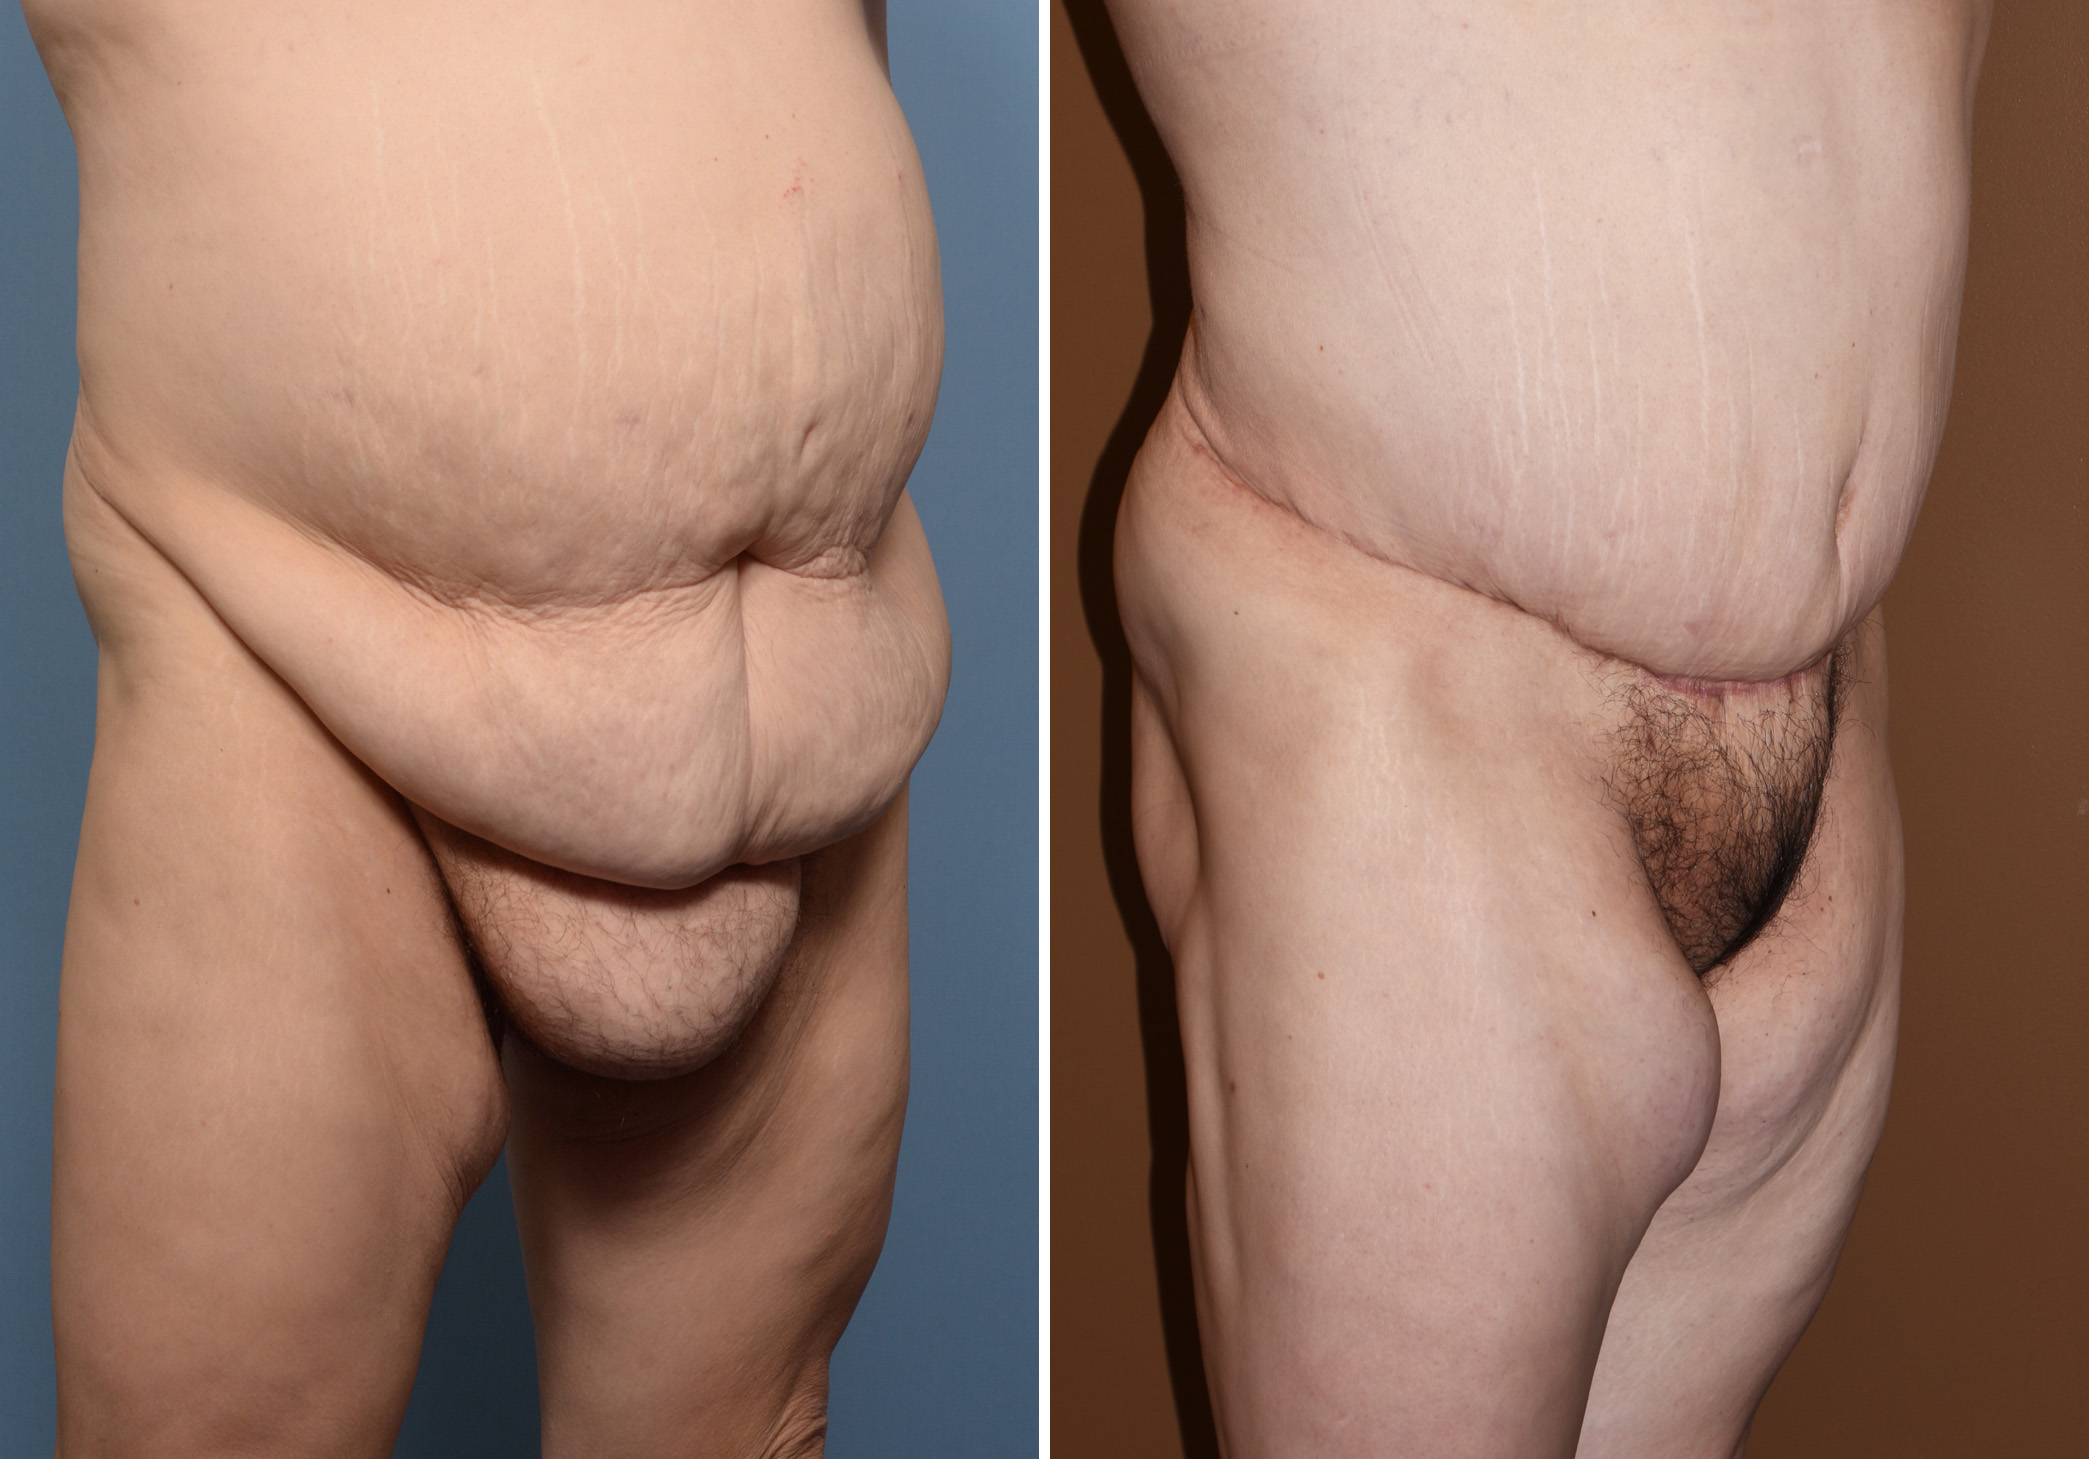 Pubic Lifts and Liposuction for Mons Rejuvenation - Explore Plastic Surgery